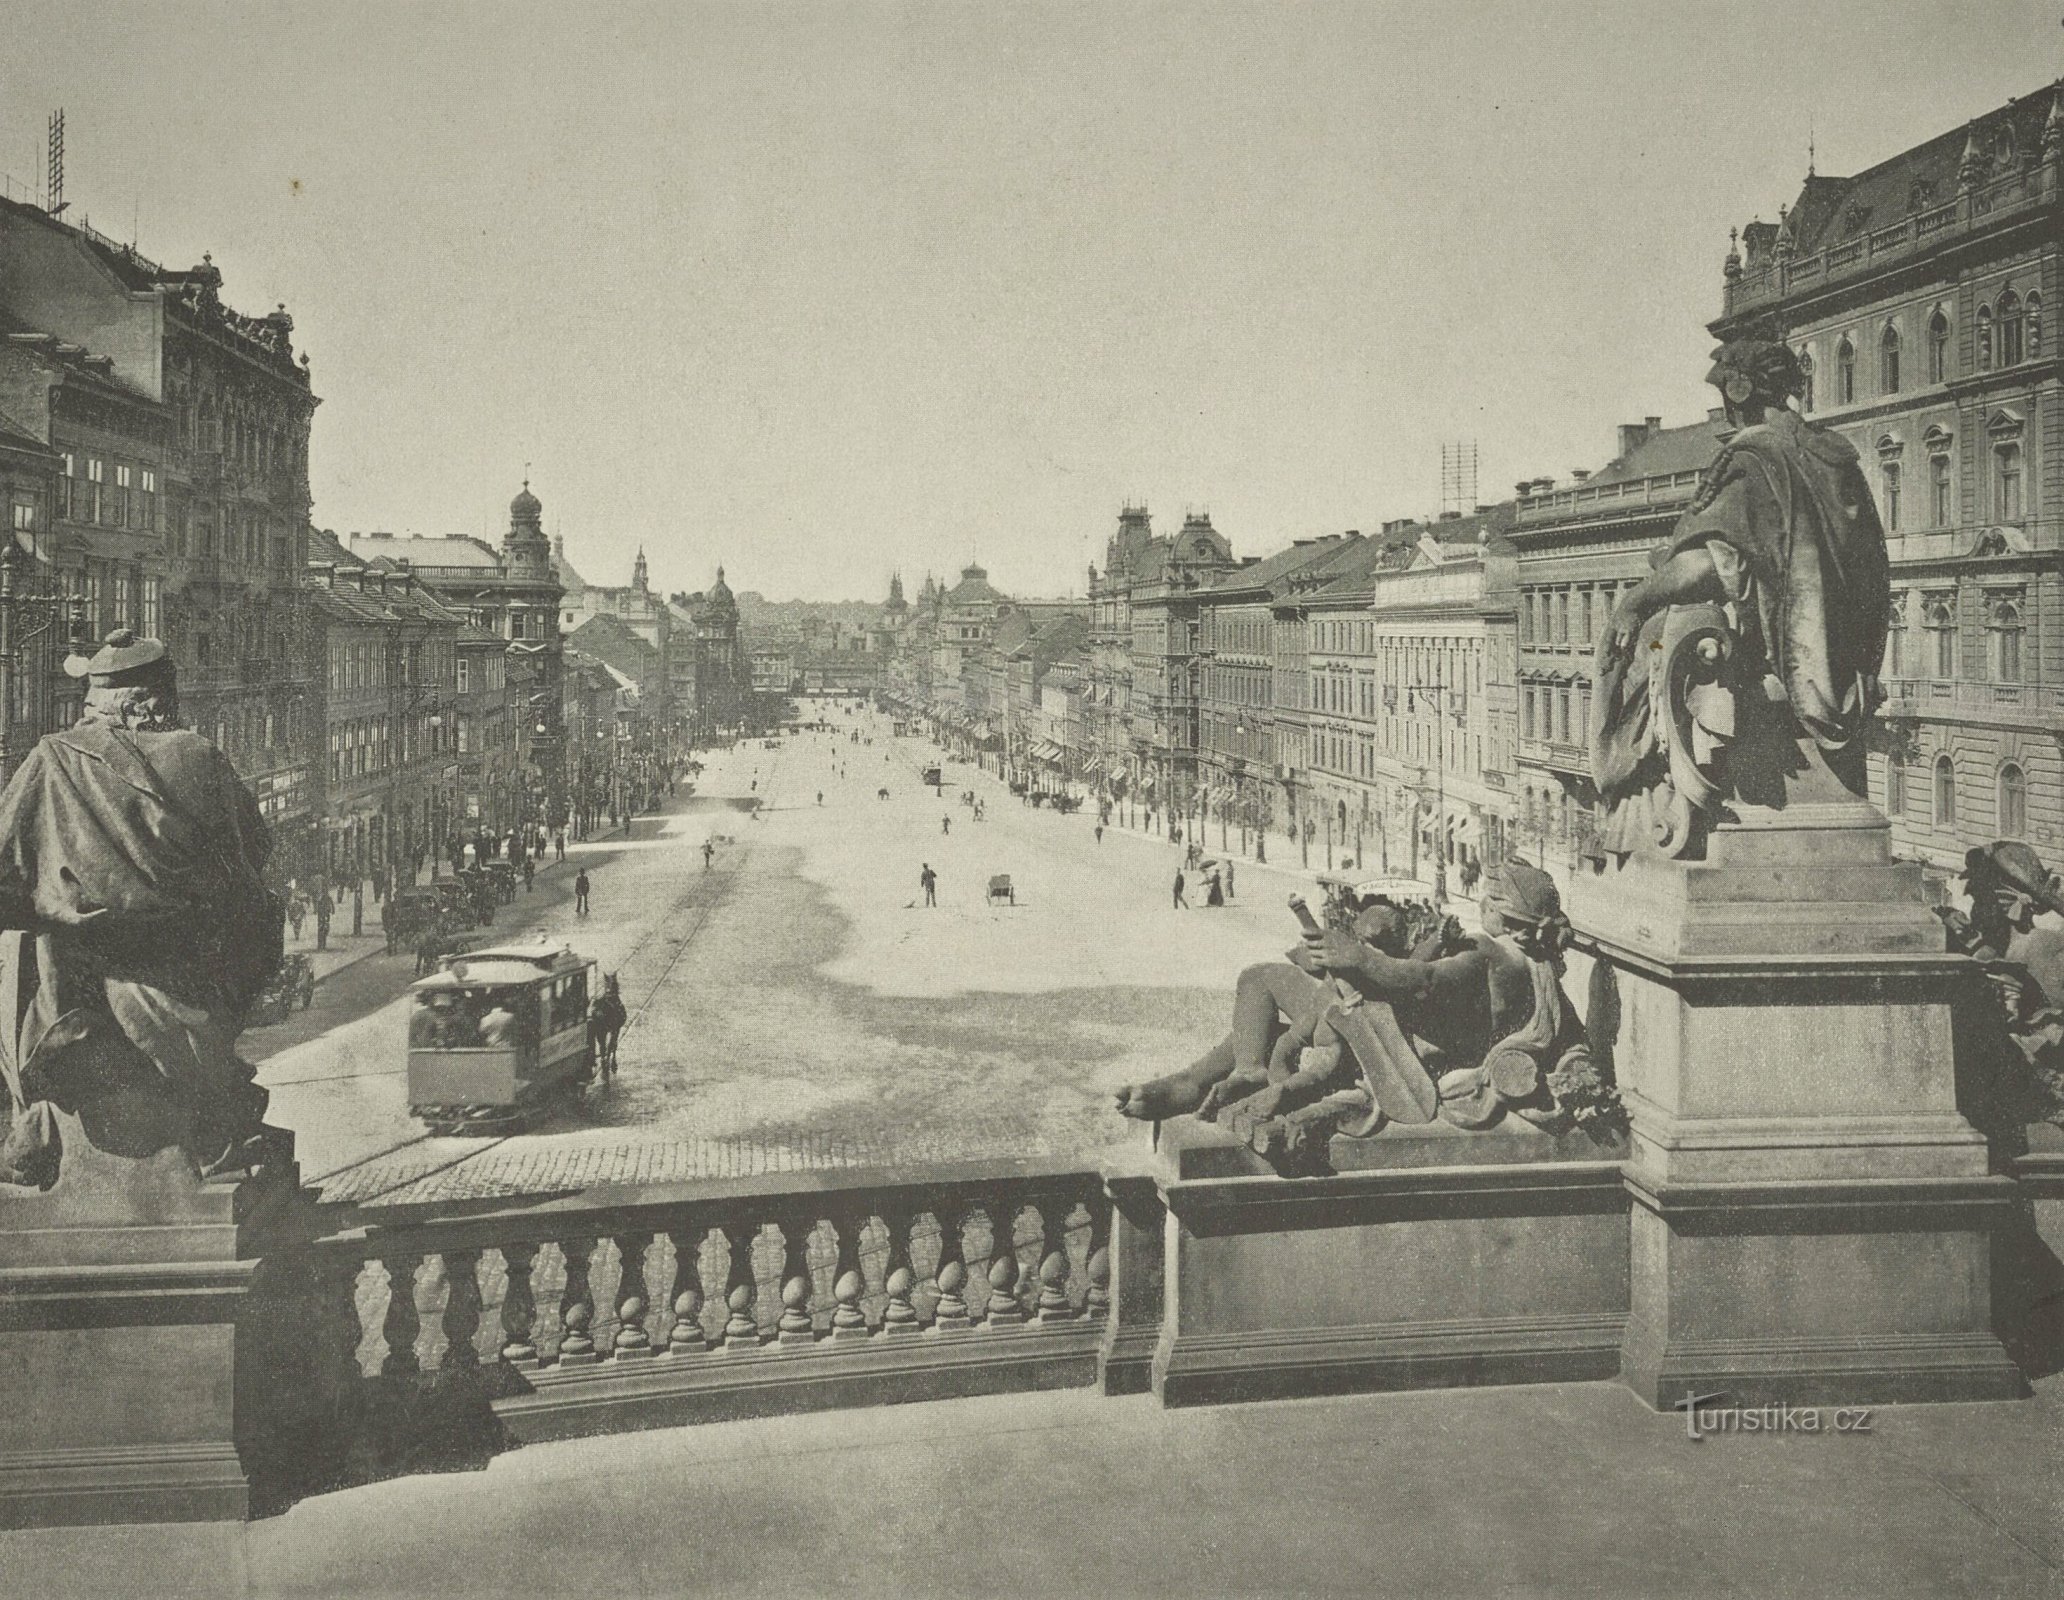 Vue de la place Venceslas de Prague depuis le Musée national (probablement 1897-1898)